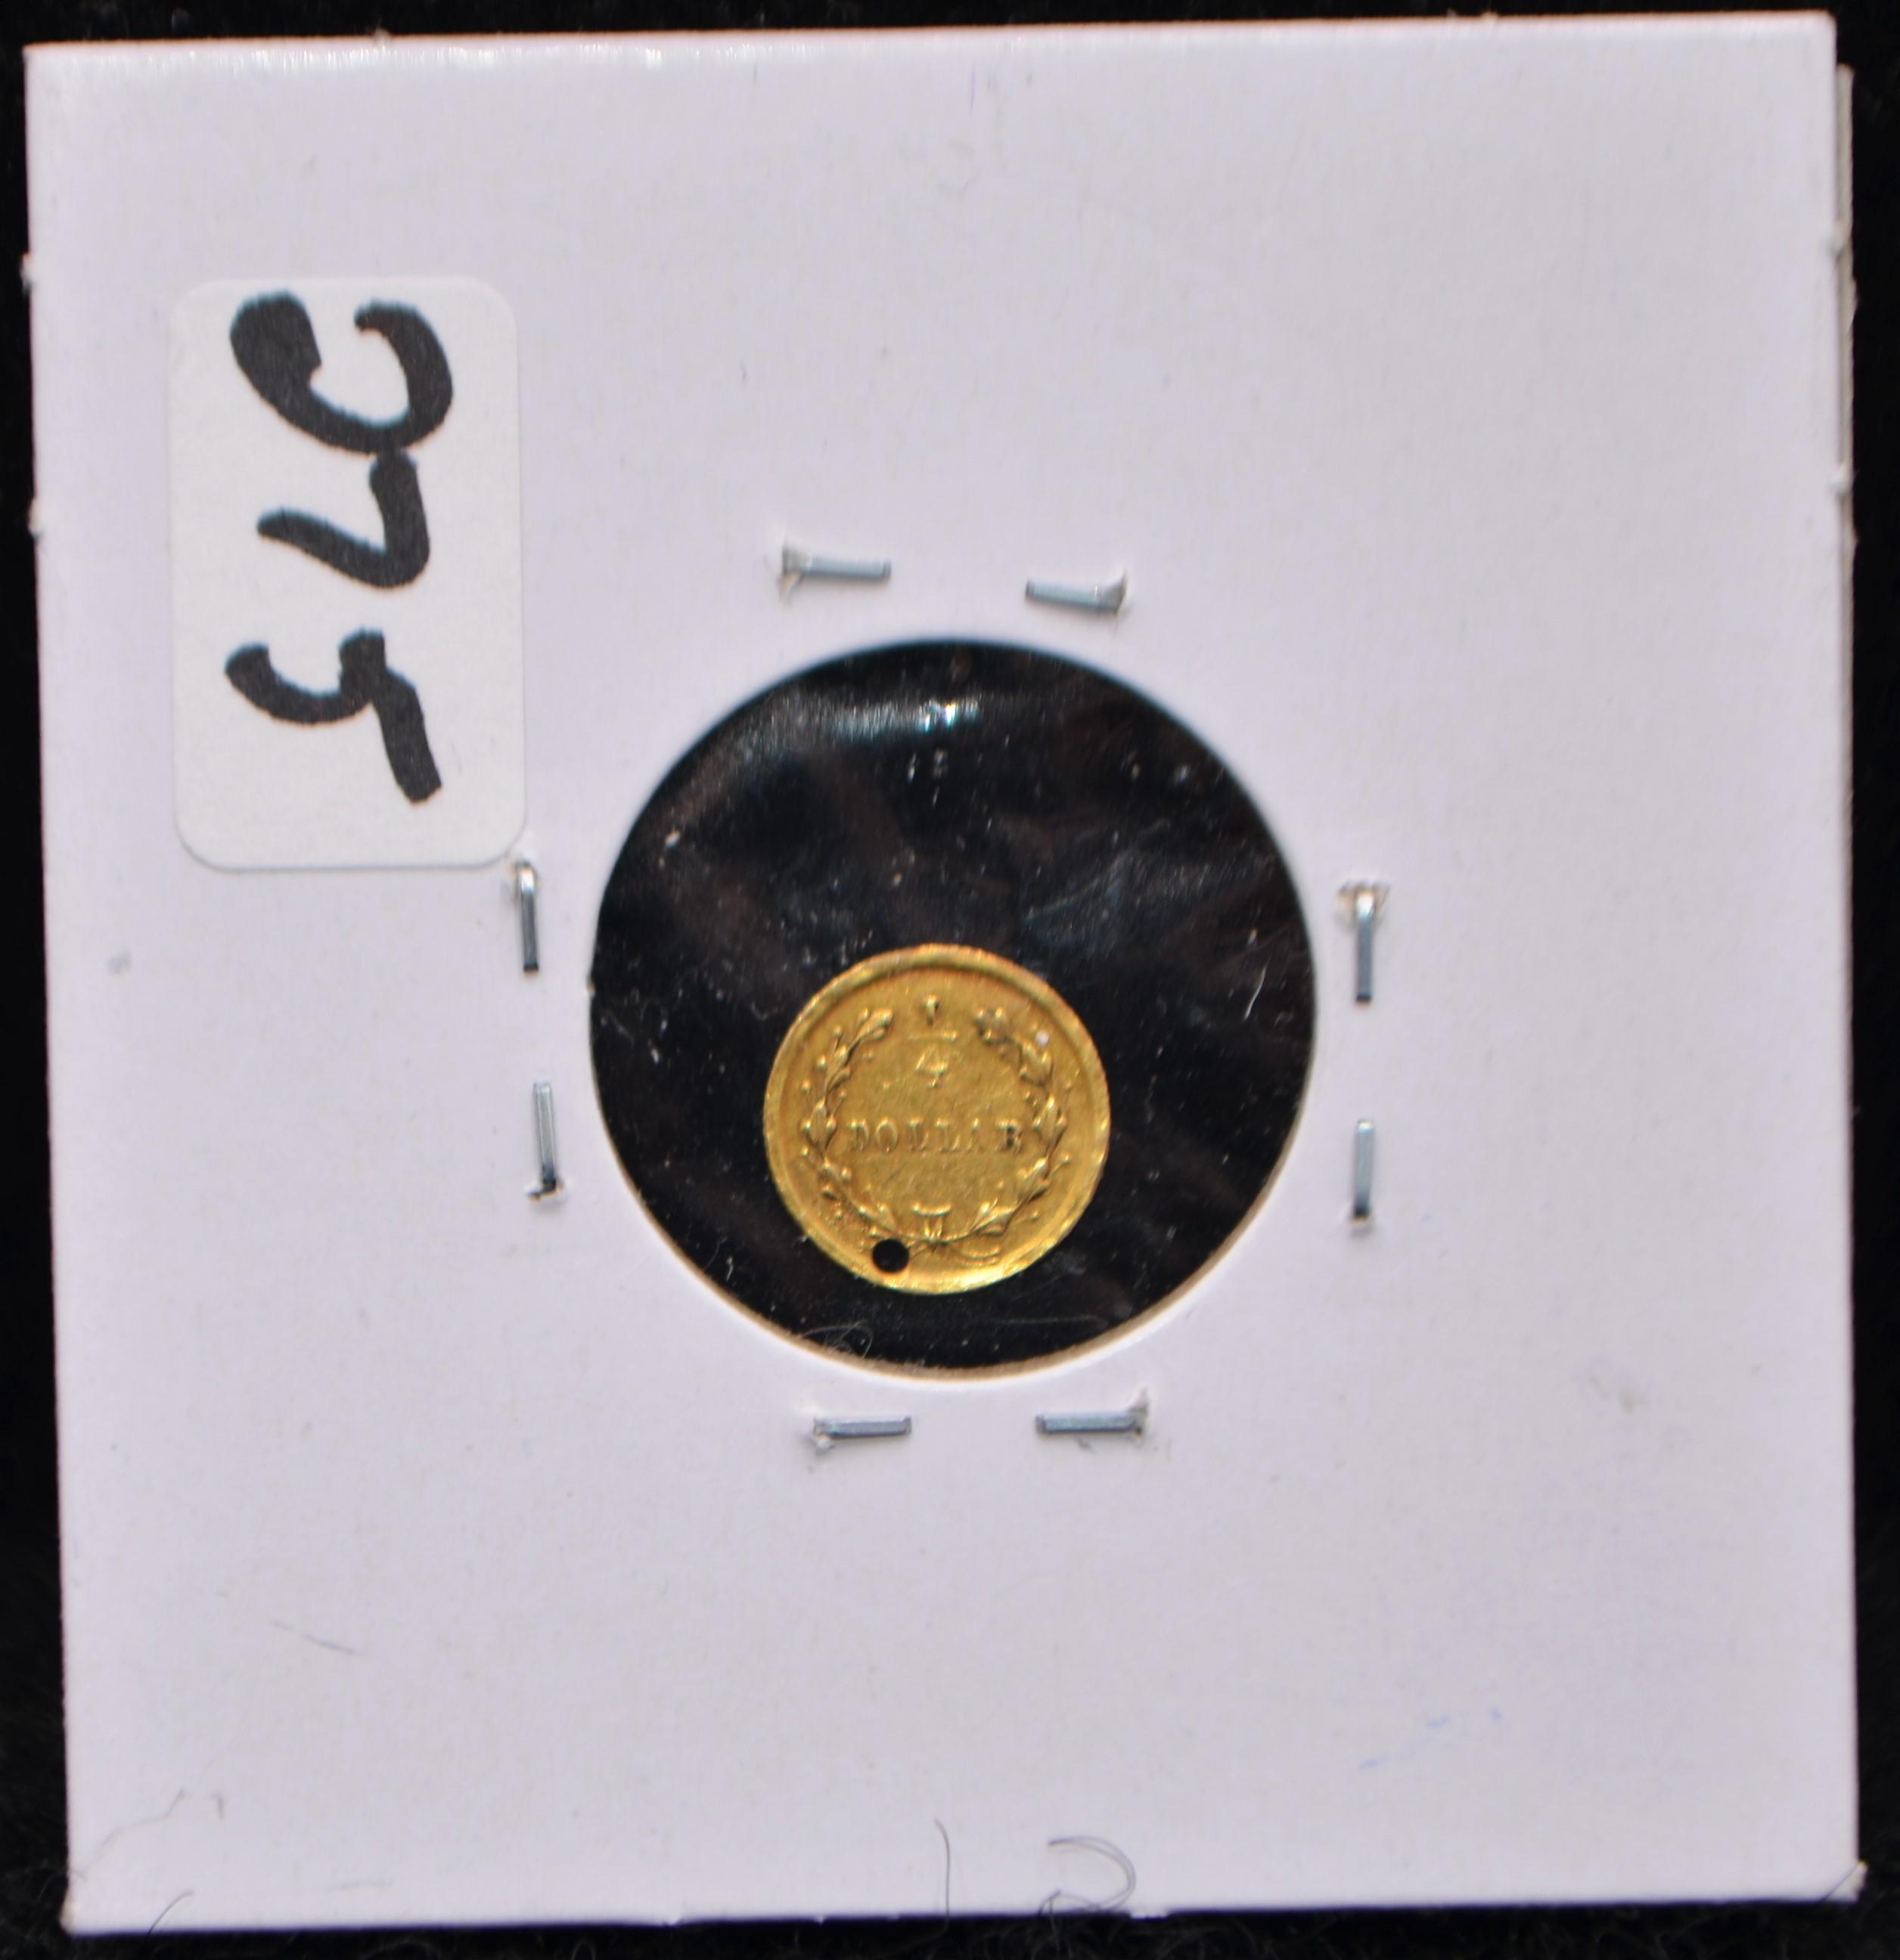 25 CENT CALIFORNIA GOLD - CIRCA 1854